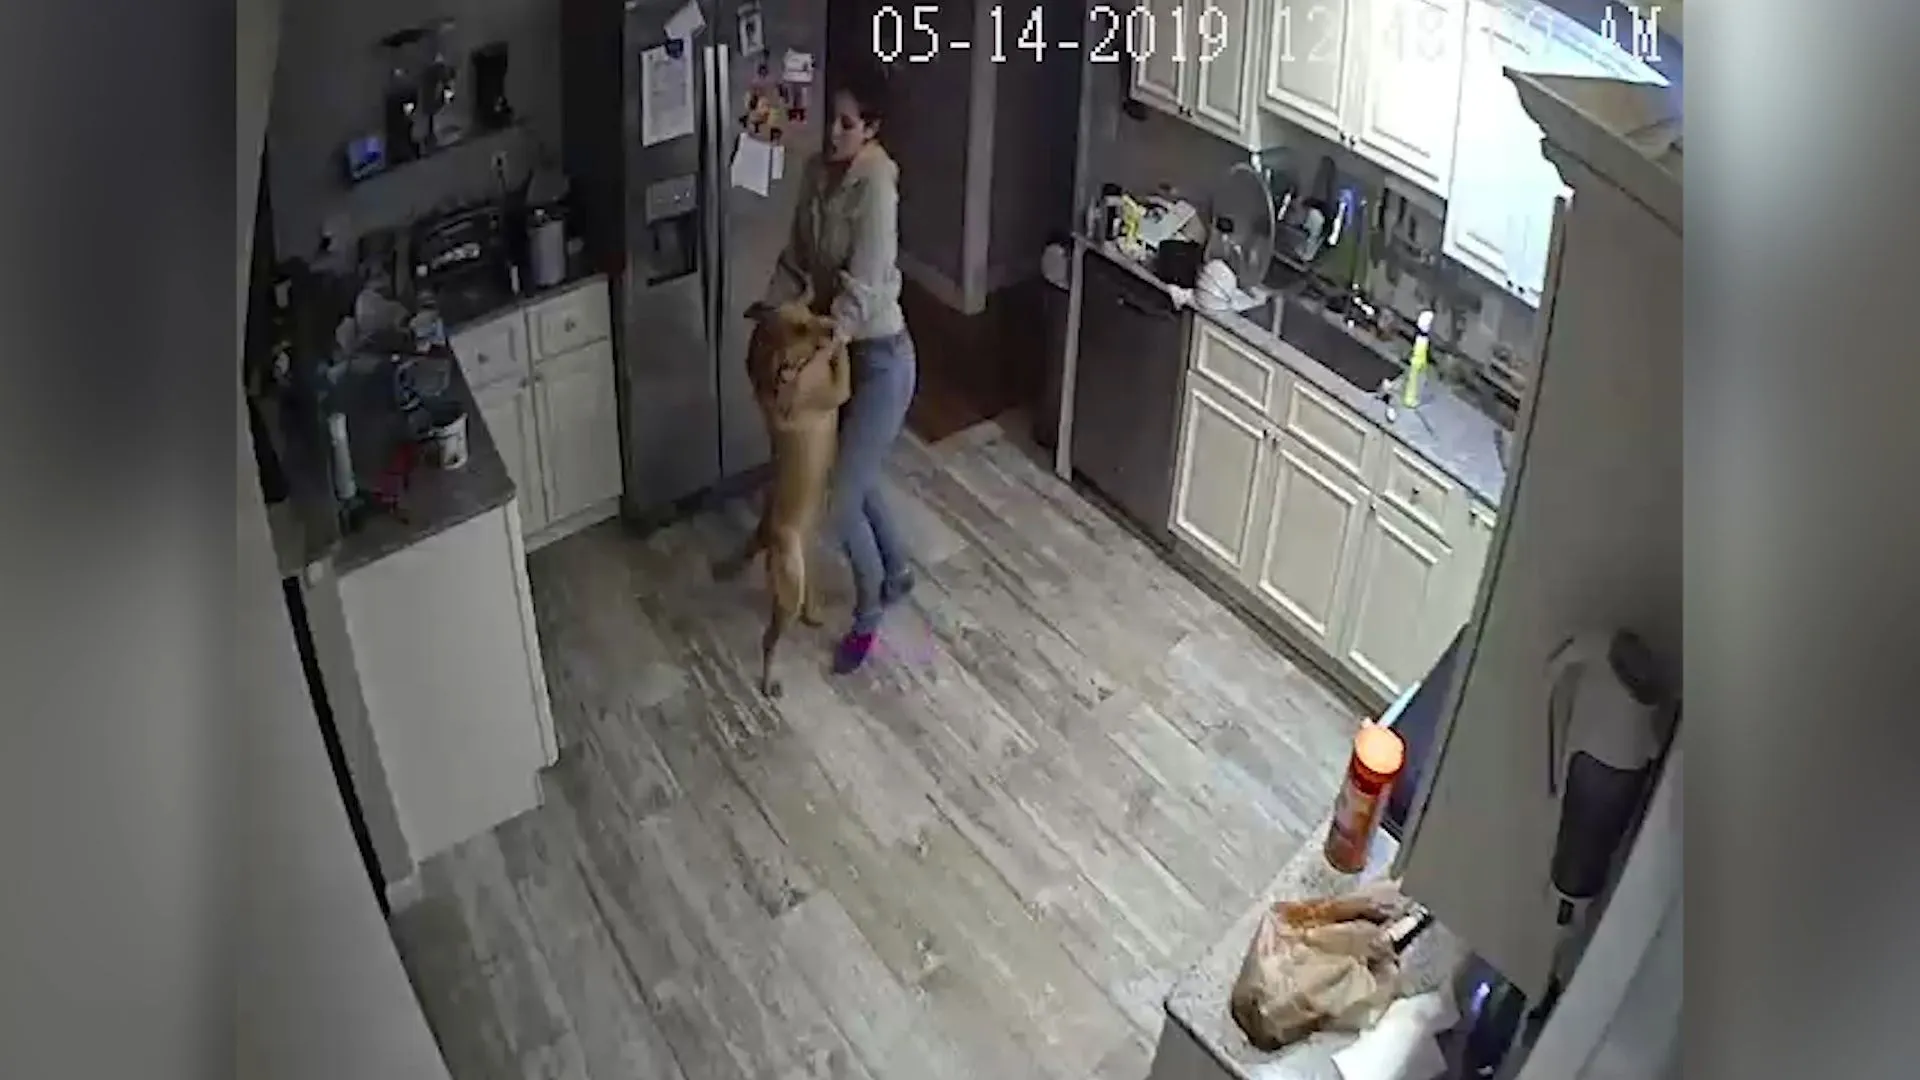 Una donna balla con il cane e fa scattare l'allarme antifurto